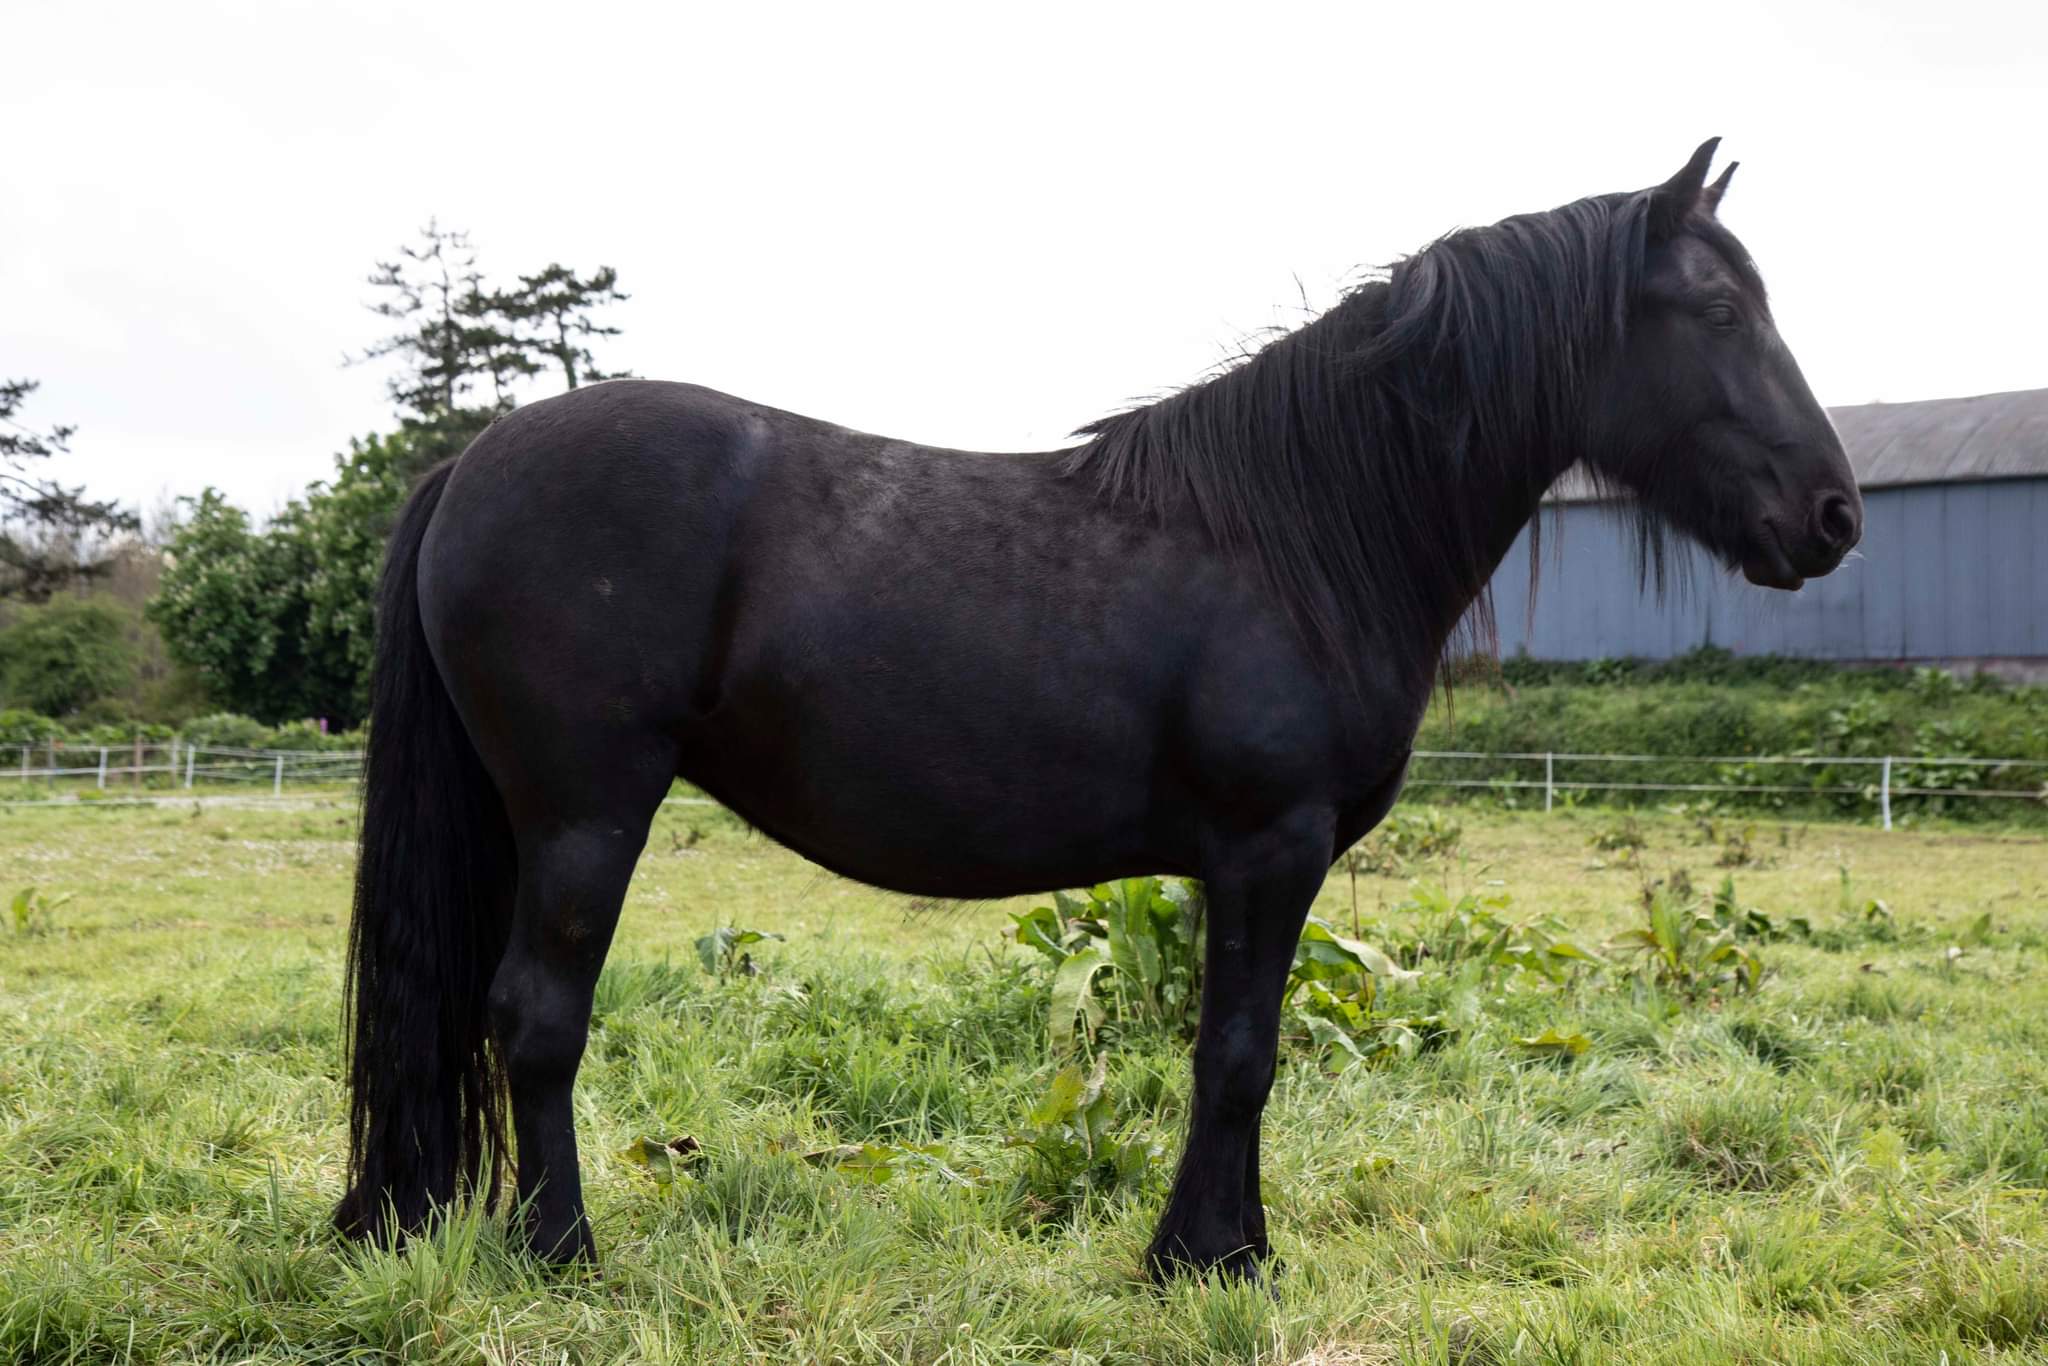 Black pony in a green field